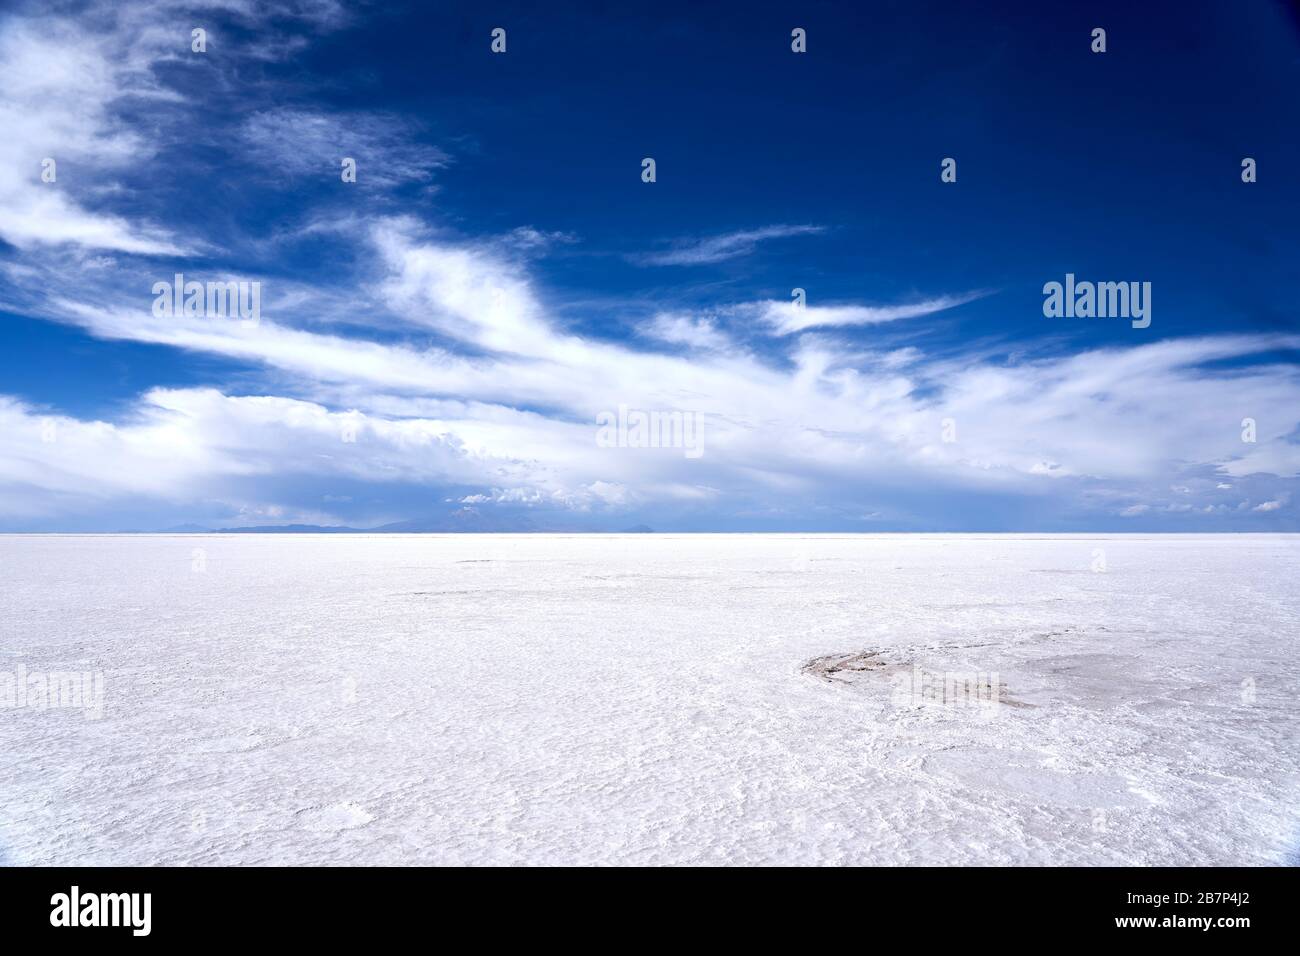 The spectacular Salt Flats of Salar de Uyuni Bolivia Stock Photo